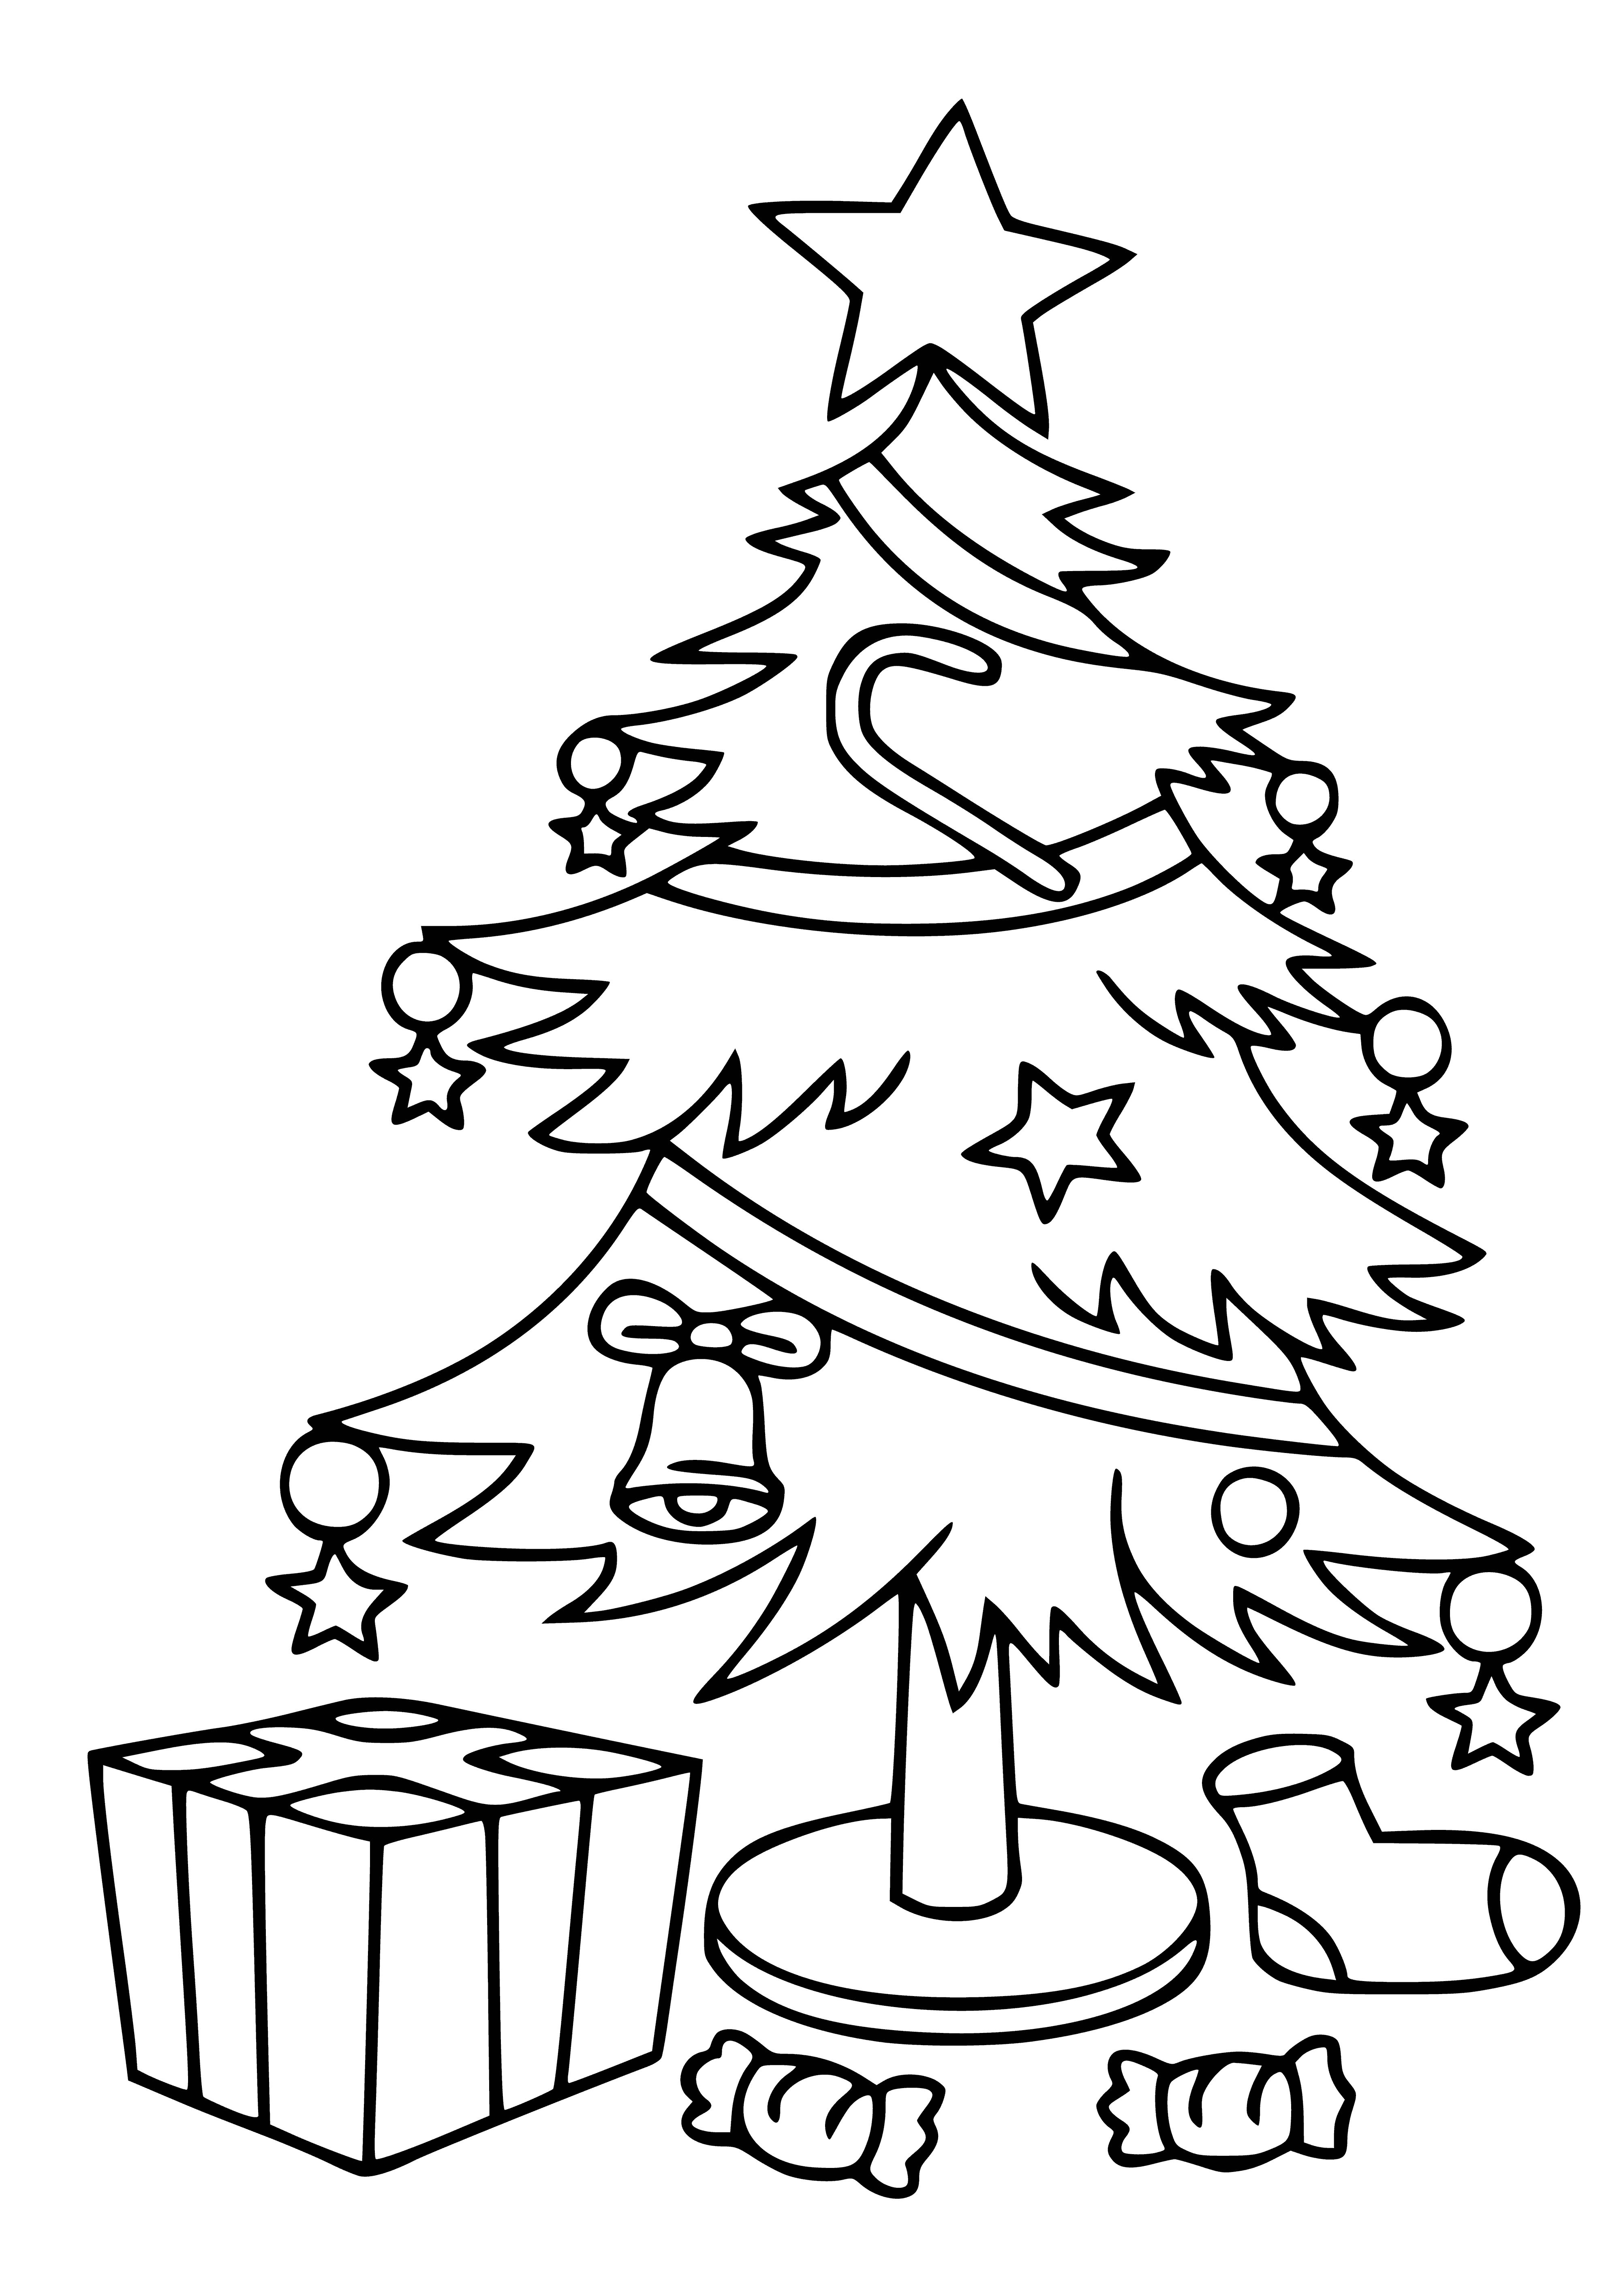 Ağacın altında hediye boyama sayfası